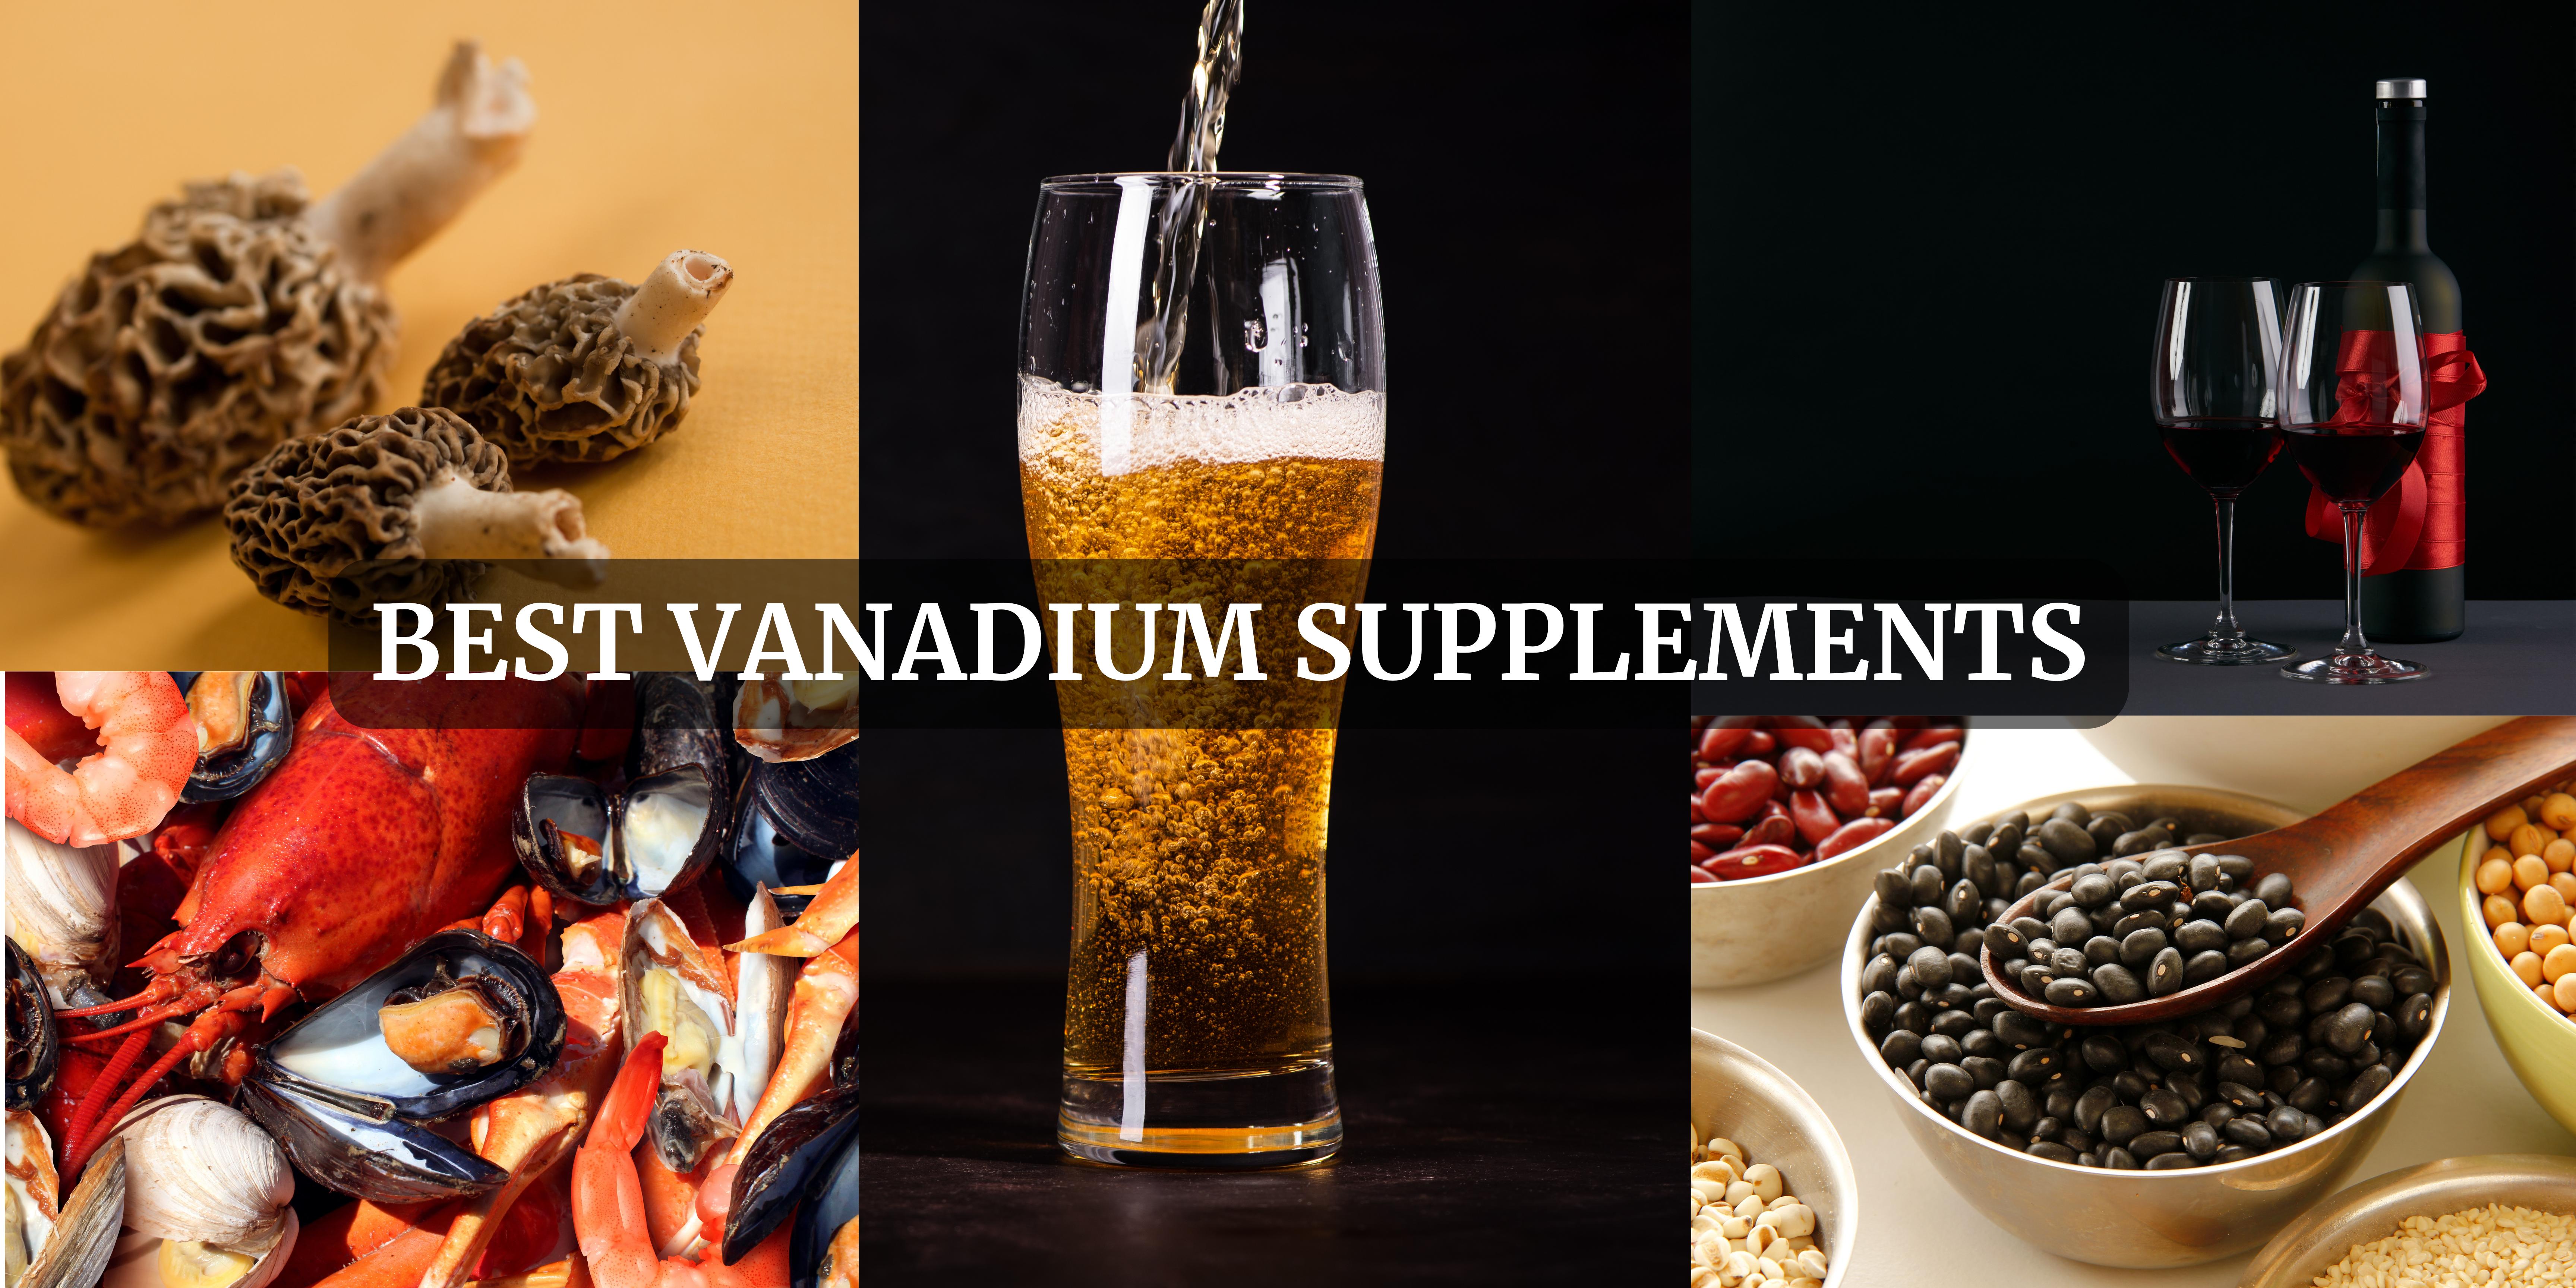 Vanadium Supplements in Japan